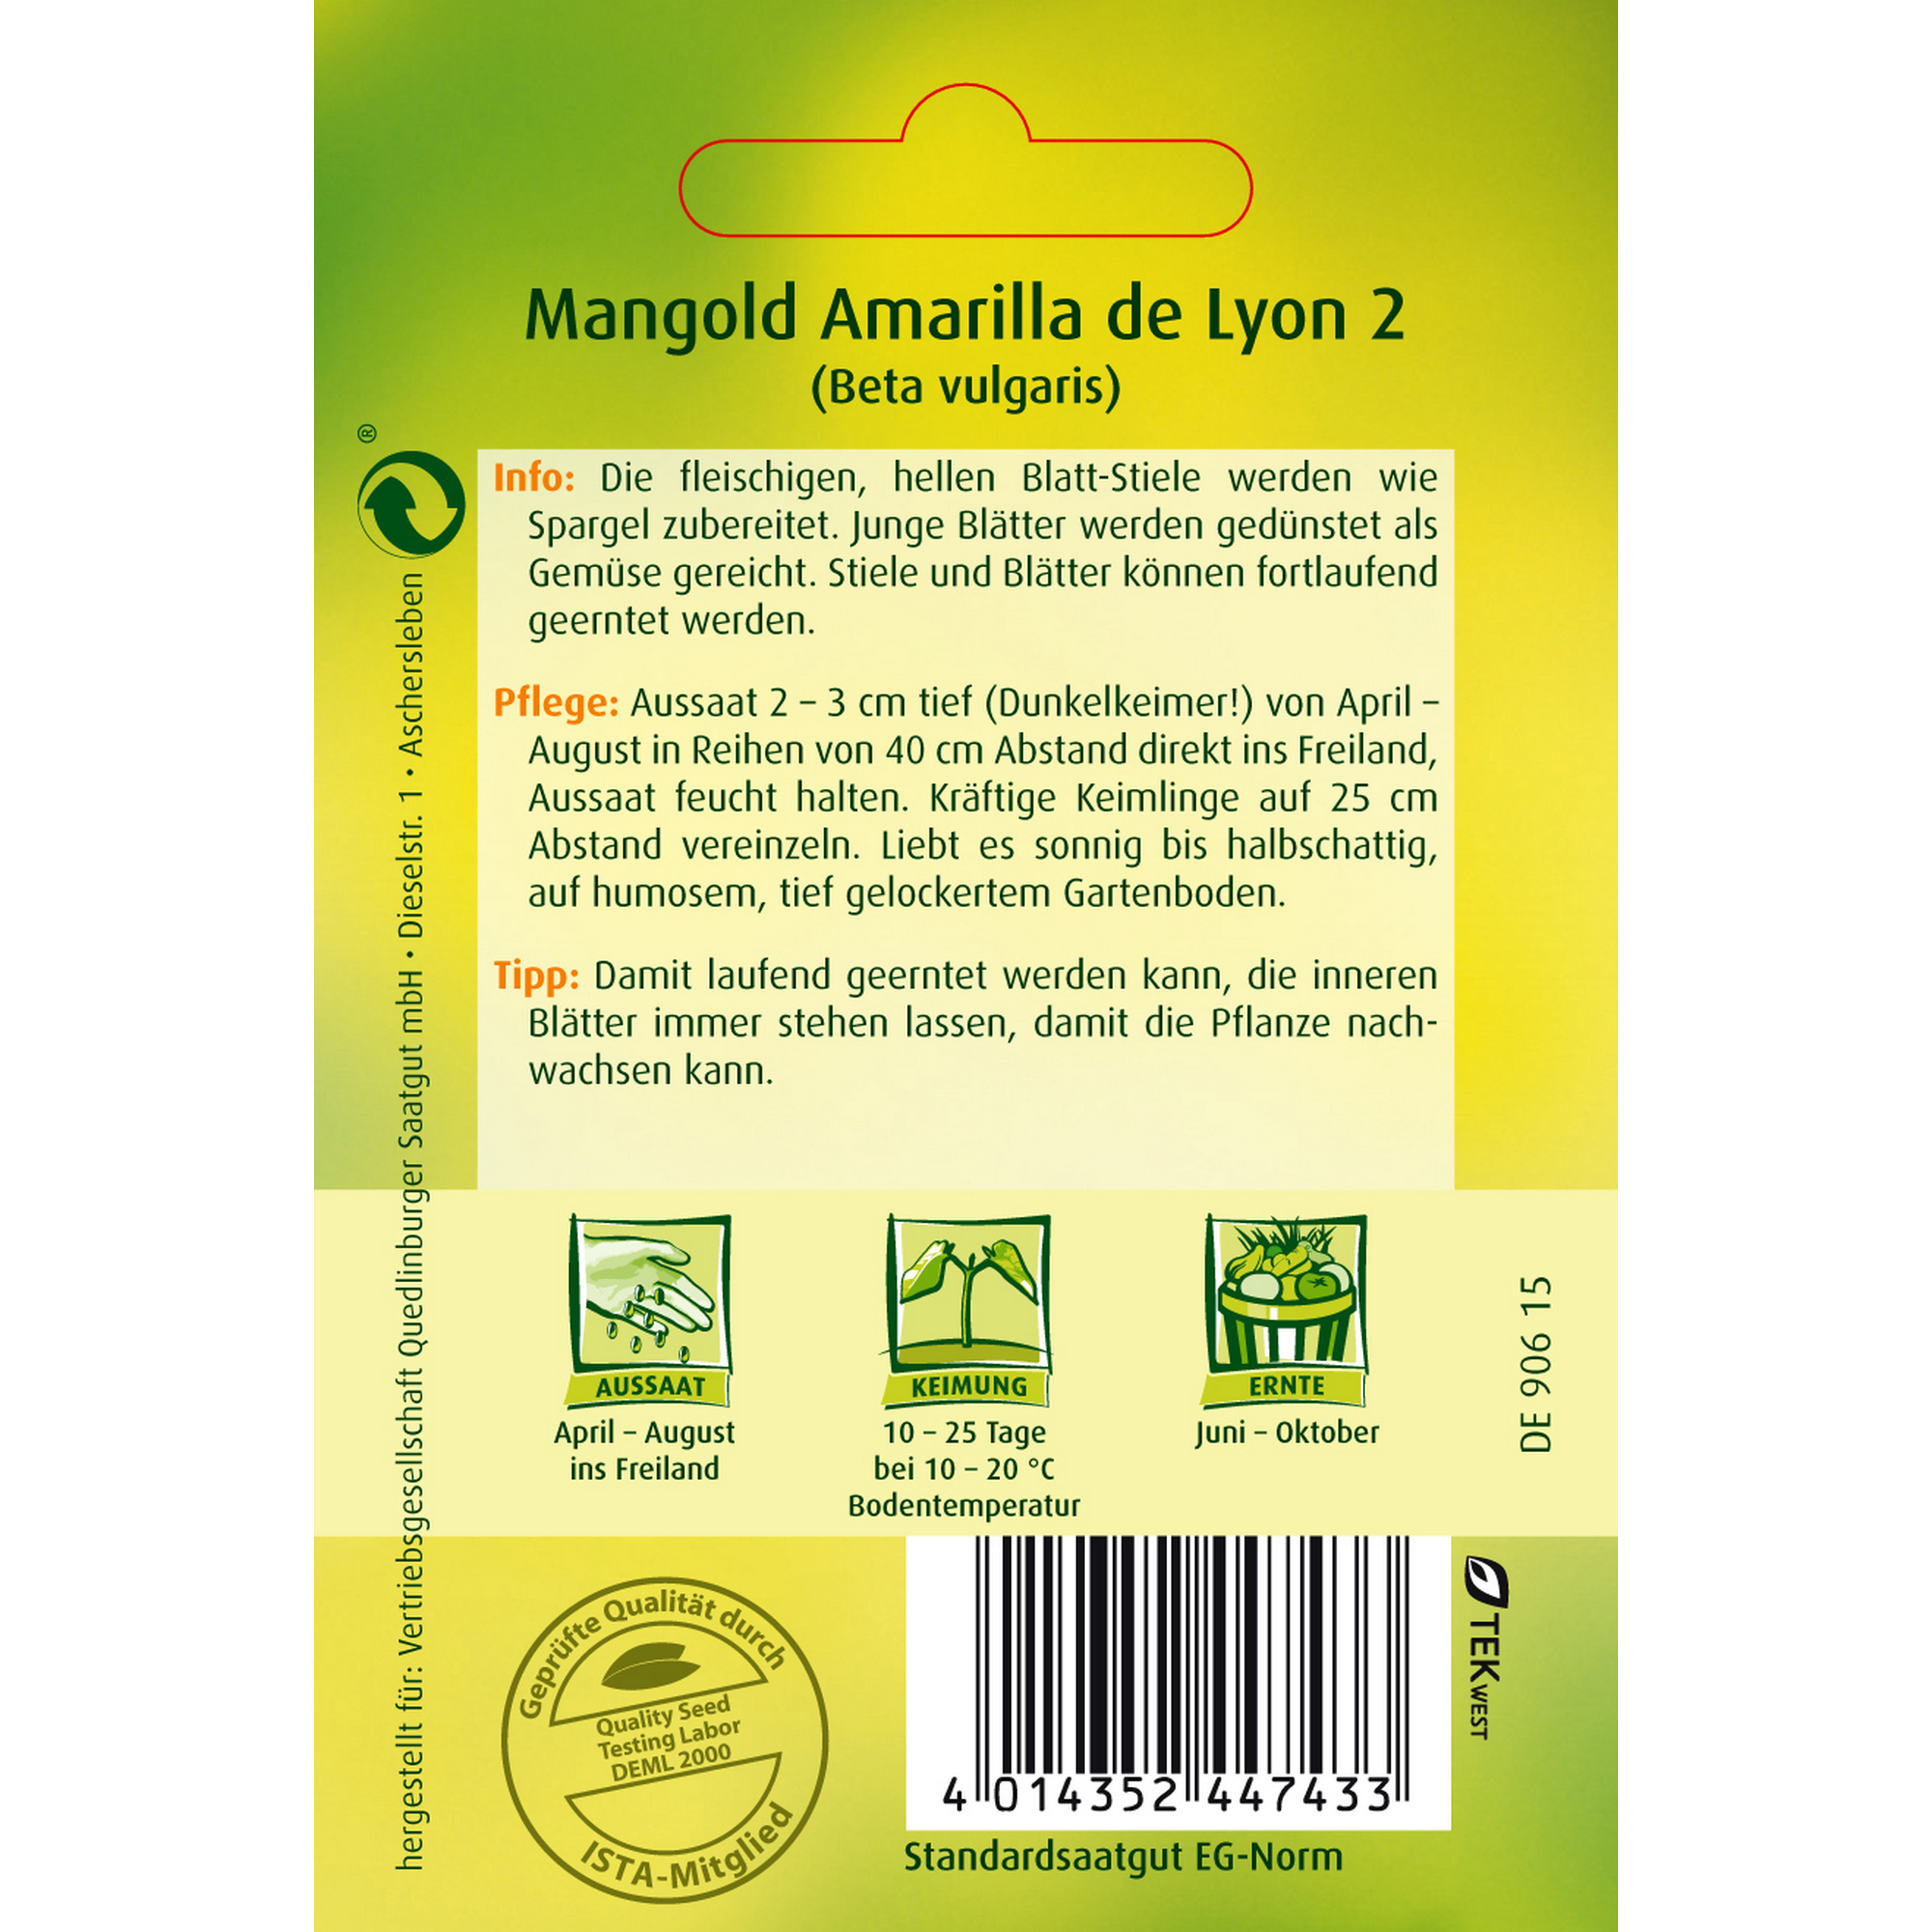 Mangold 'Amarilla de Lyon 2' + product picture